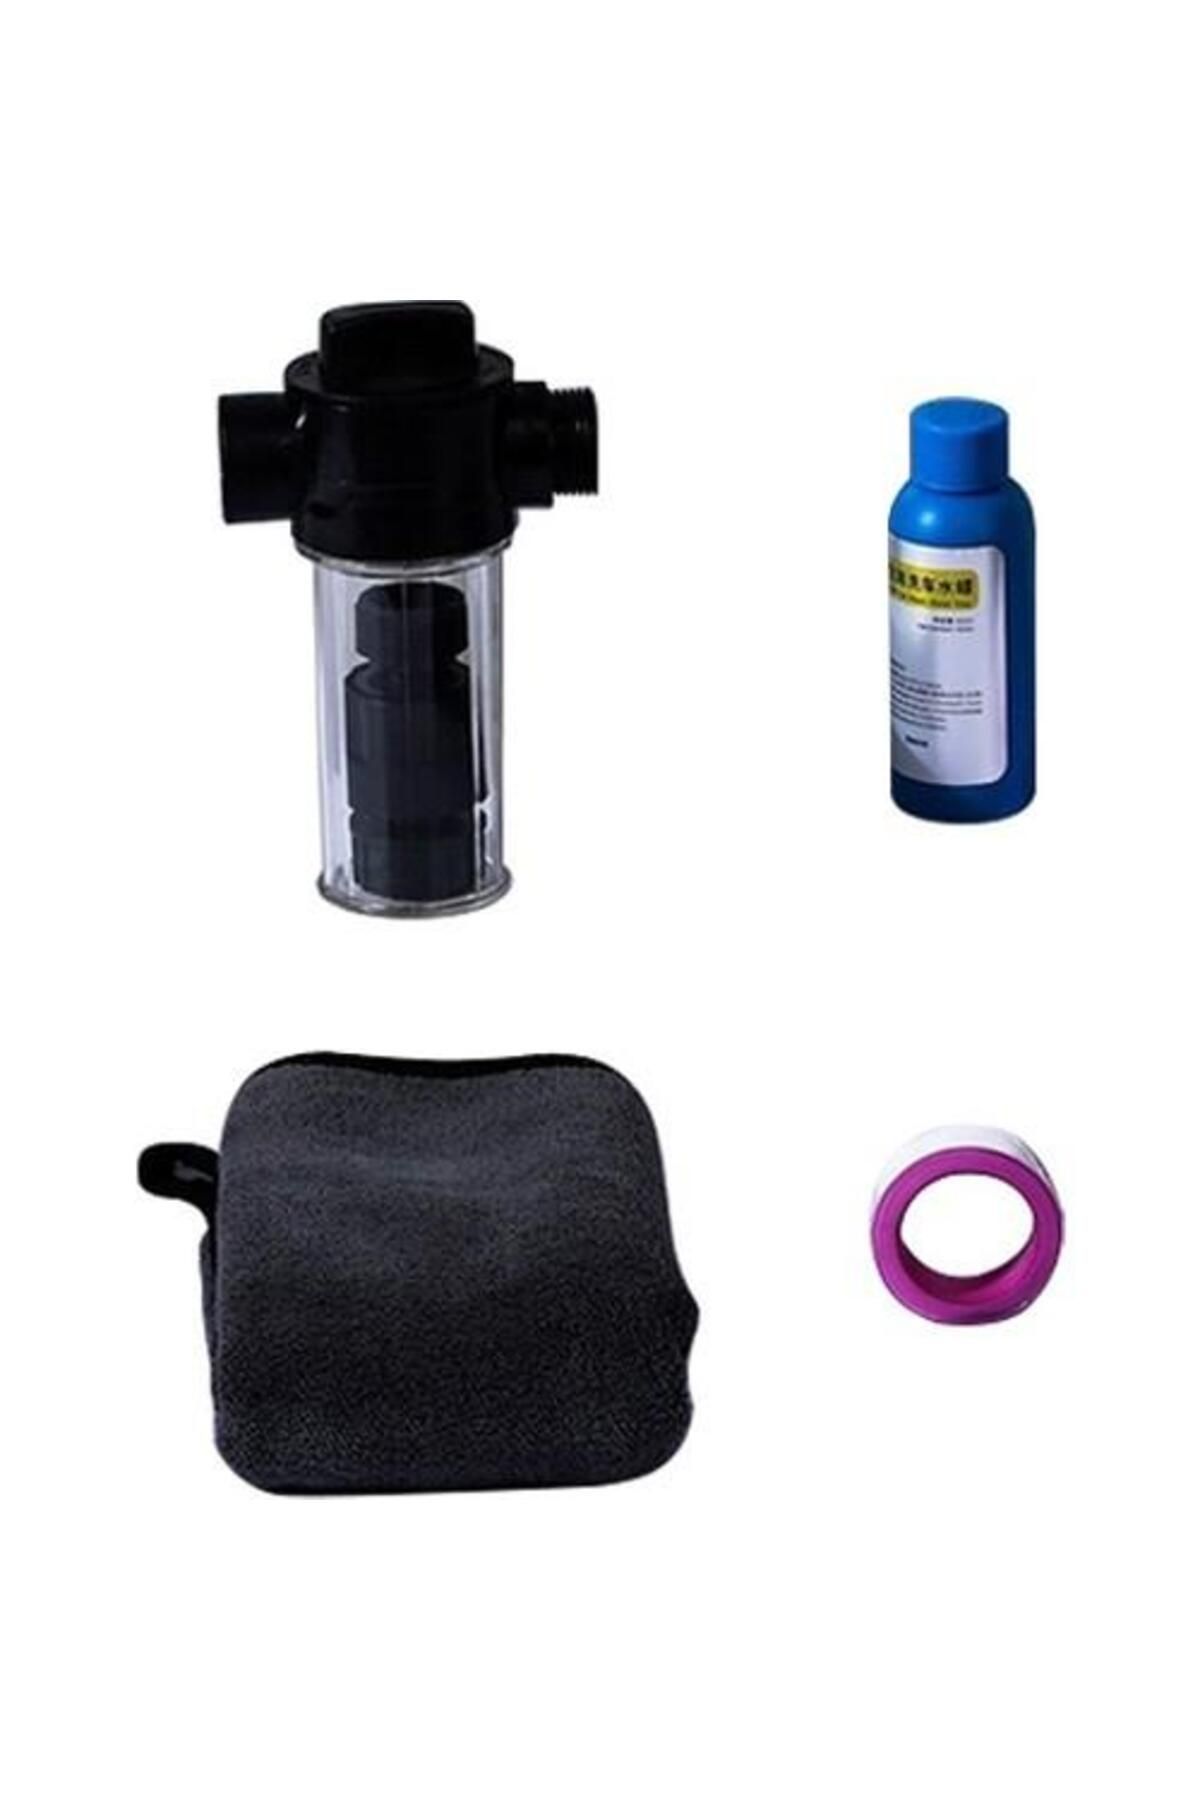 Baseus 4in1 Araç Yıkama Temizleme Seti, Köpük Haznesi, Havlu, Yıkama Şampuanı Ve Bantlı Hortum Ucu S